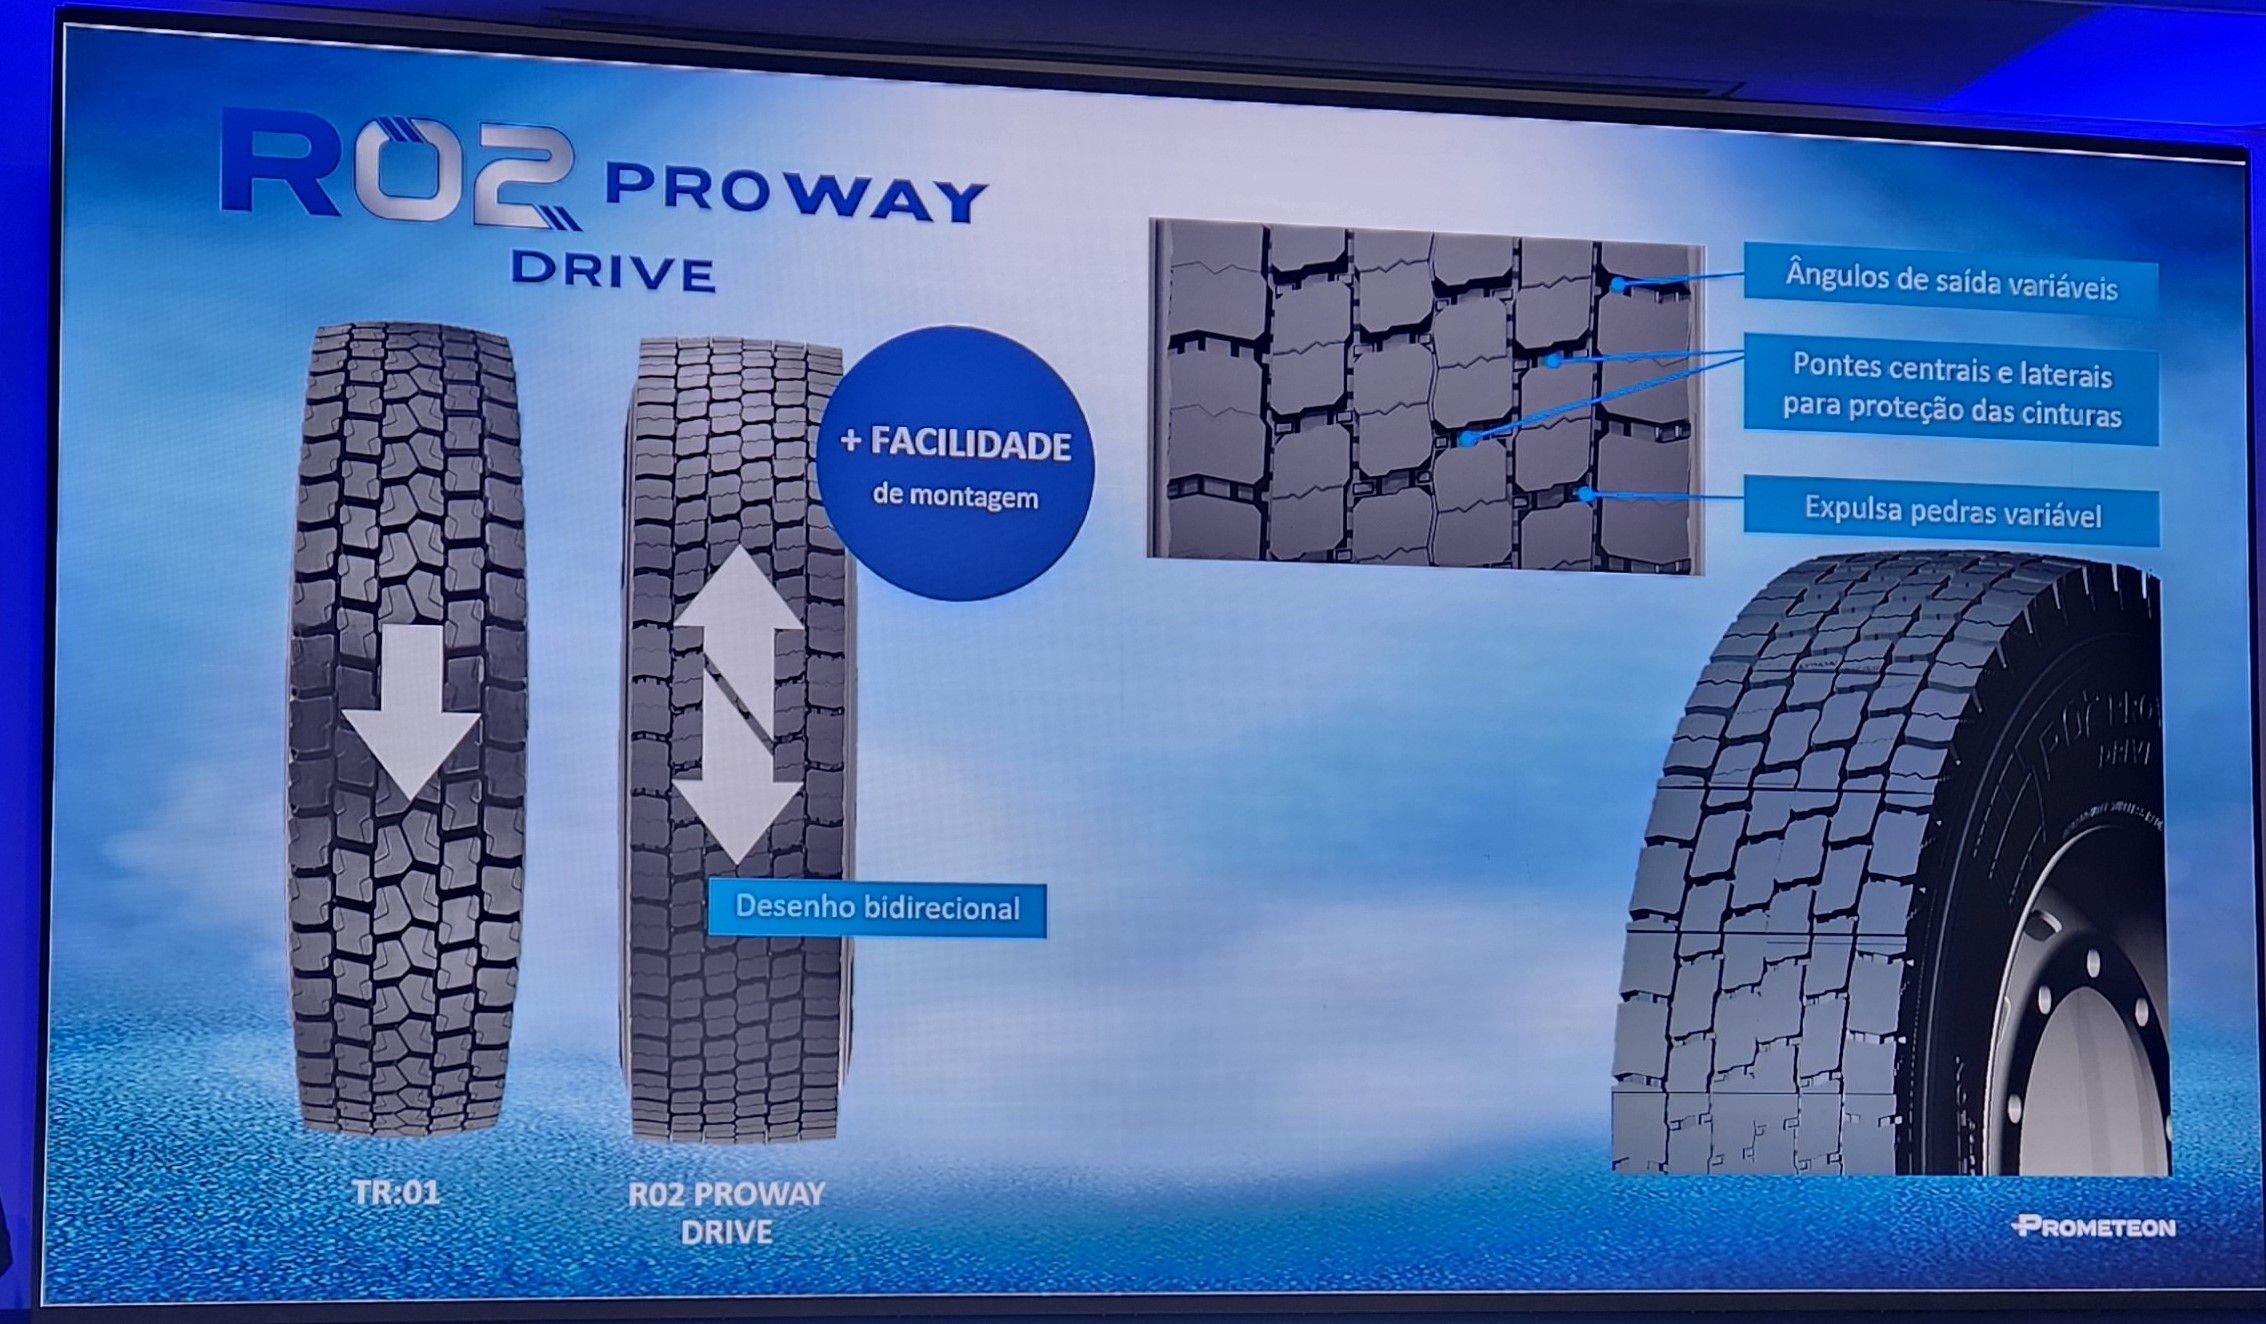 Prometeon apresenta a Serie 02, com nova tecnologia de pneus para os pesados
